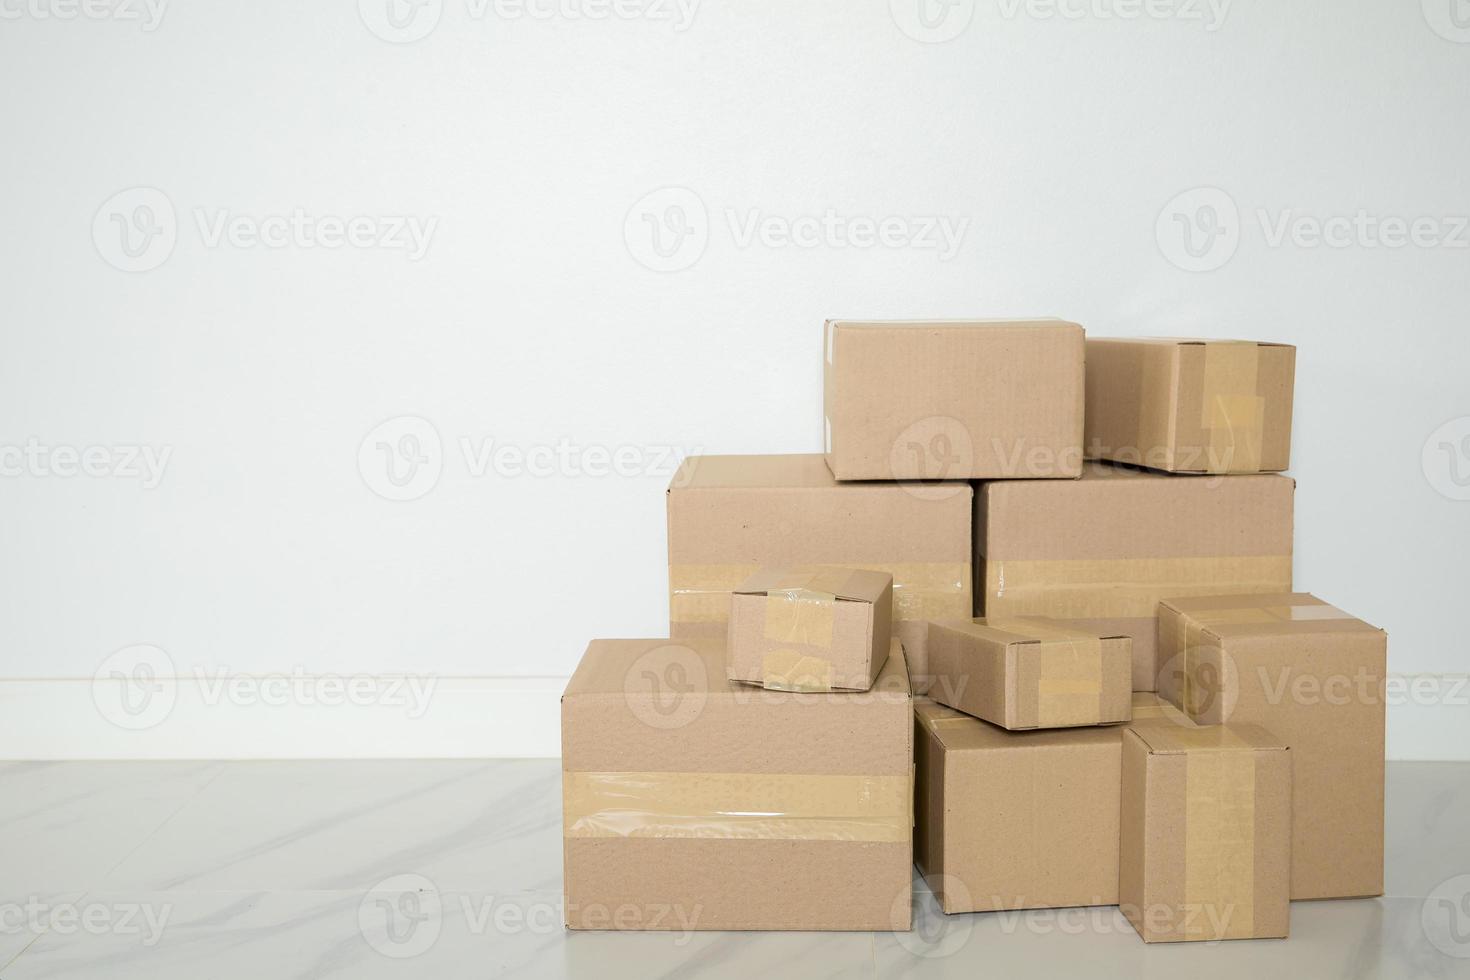 Stapel Kartons für den Umzug, leerer Raum mit weißer Wand und Kartons mit Barcode ohne Marke auf dem Boden. Lieferung von Waren, Einkaufen. pappkartons auf grauem wandhintergrund. foto